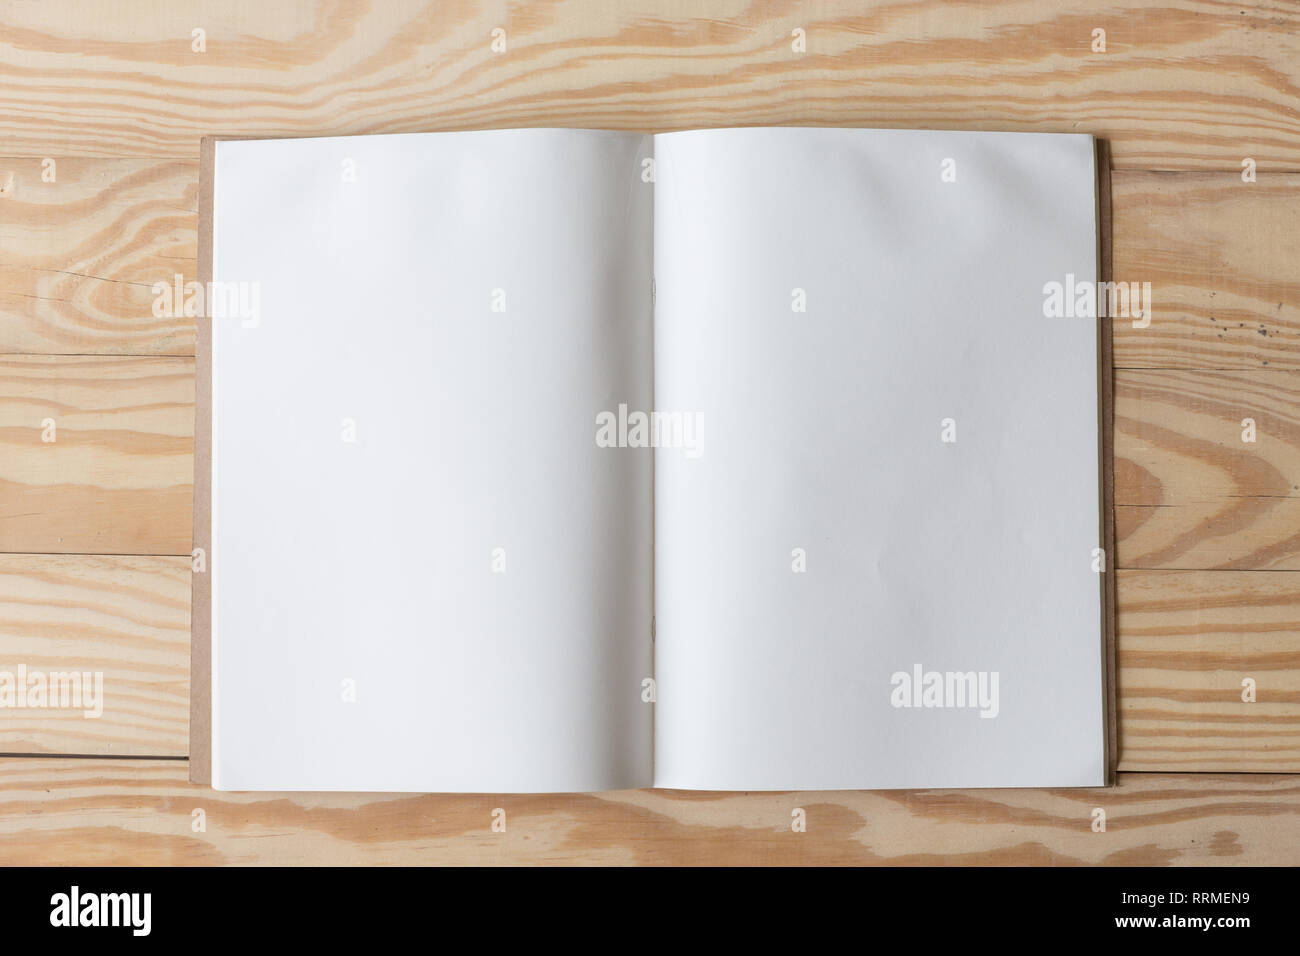 Abstrakte Leer ein Weißbuch über Holz- table top Hintergrund Konzept für leere Schreiben business Blatt, normales Mock up Bildung Vorlage, Flyer. Stockfoto